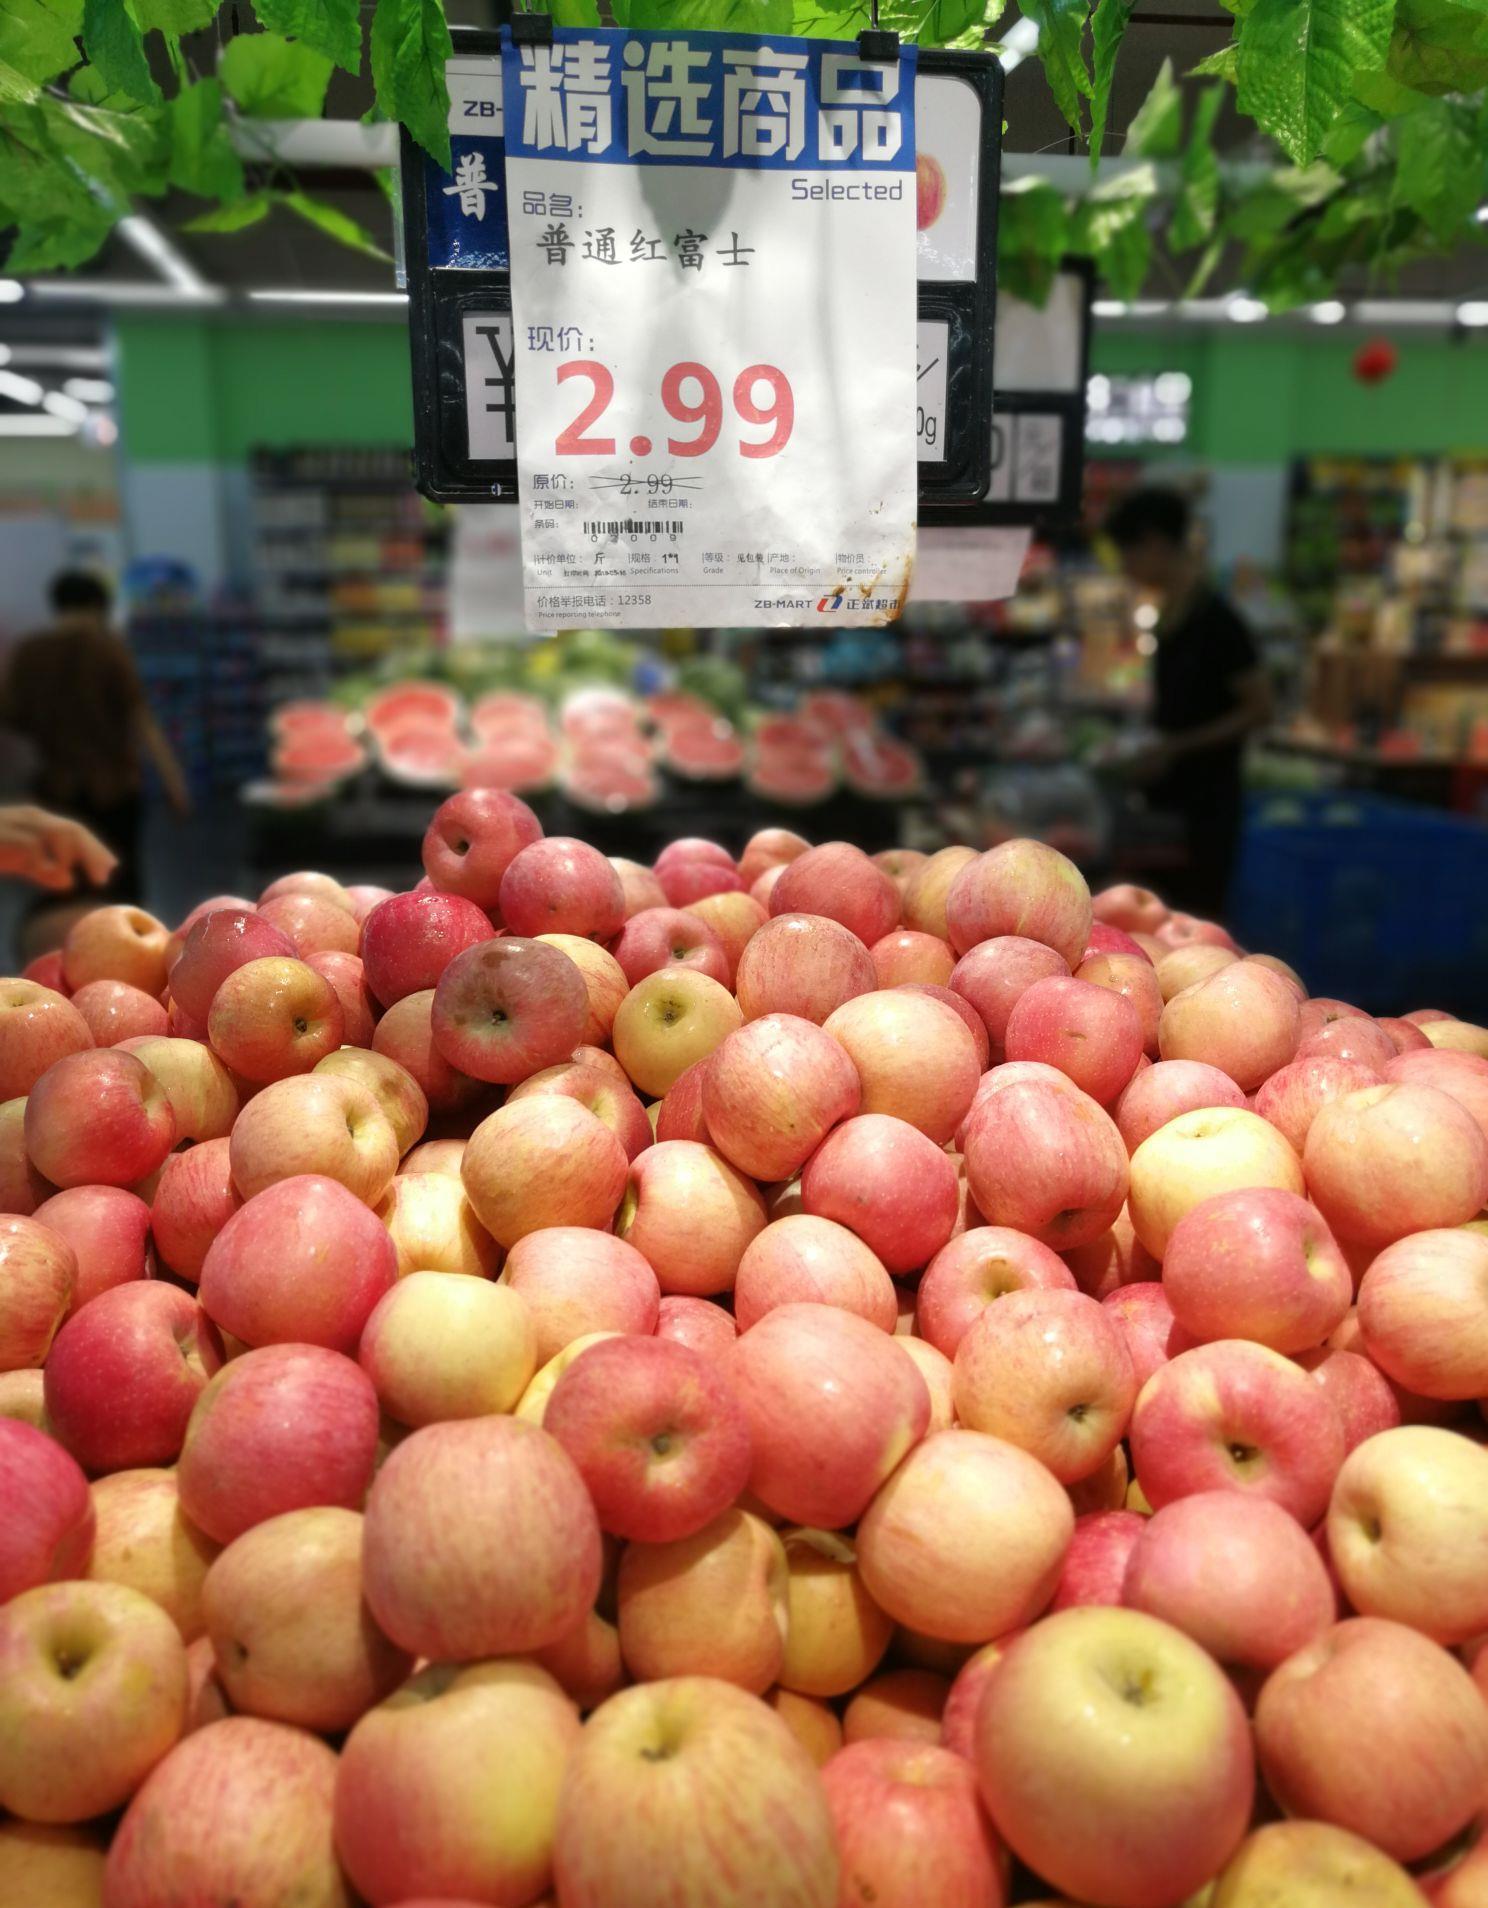 昨天去超市苹果价格